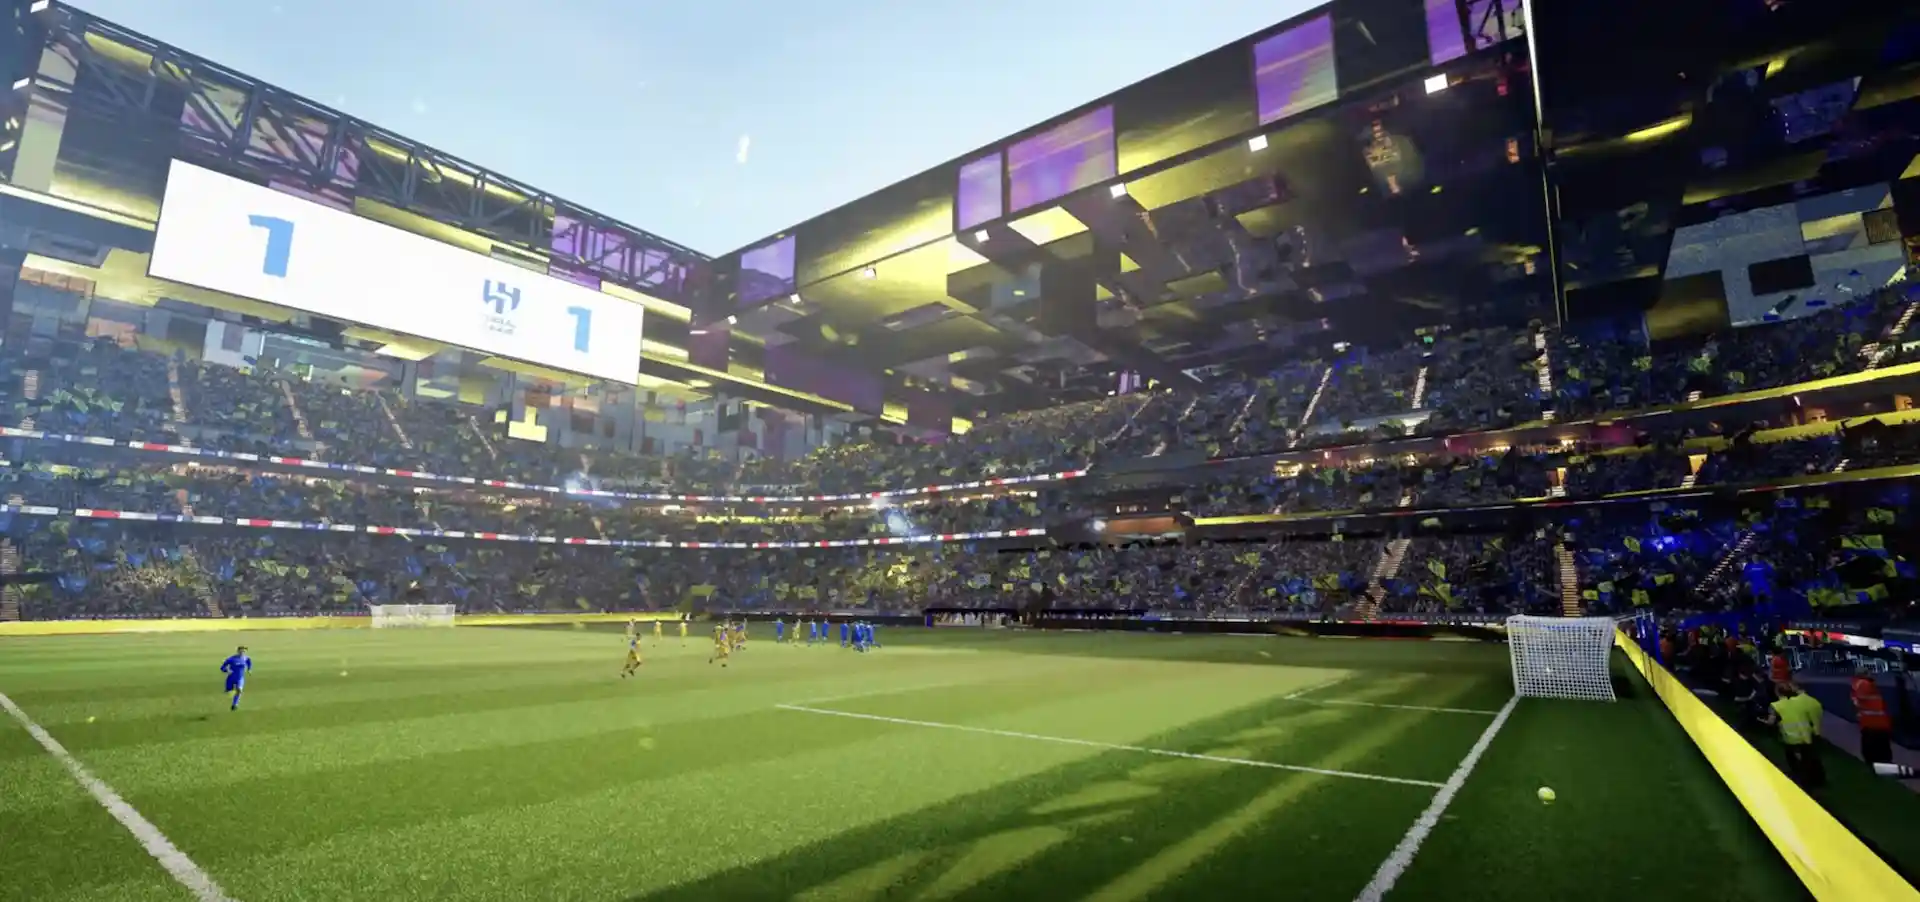 El imperdible video que muestra el estadio más moderno del mundo